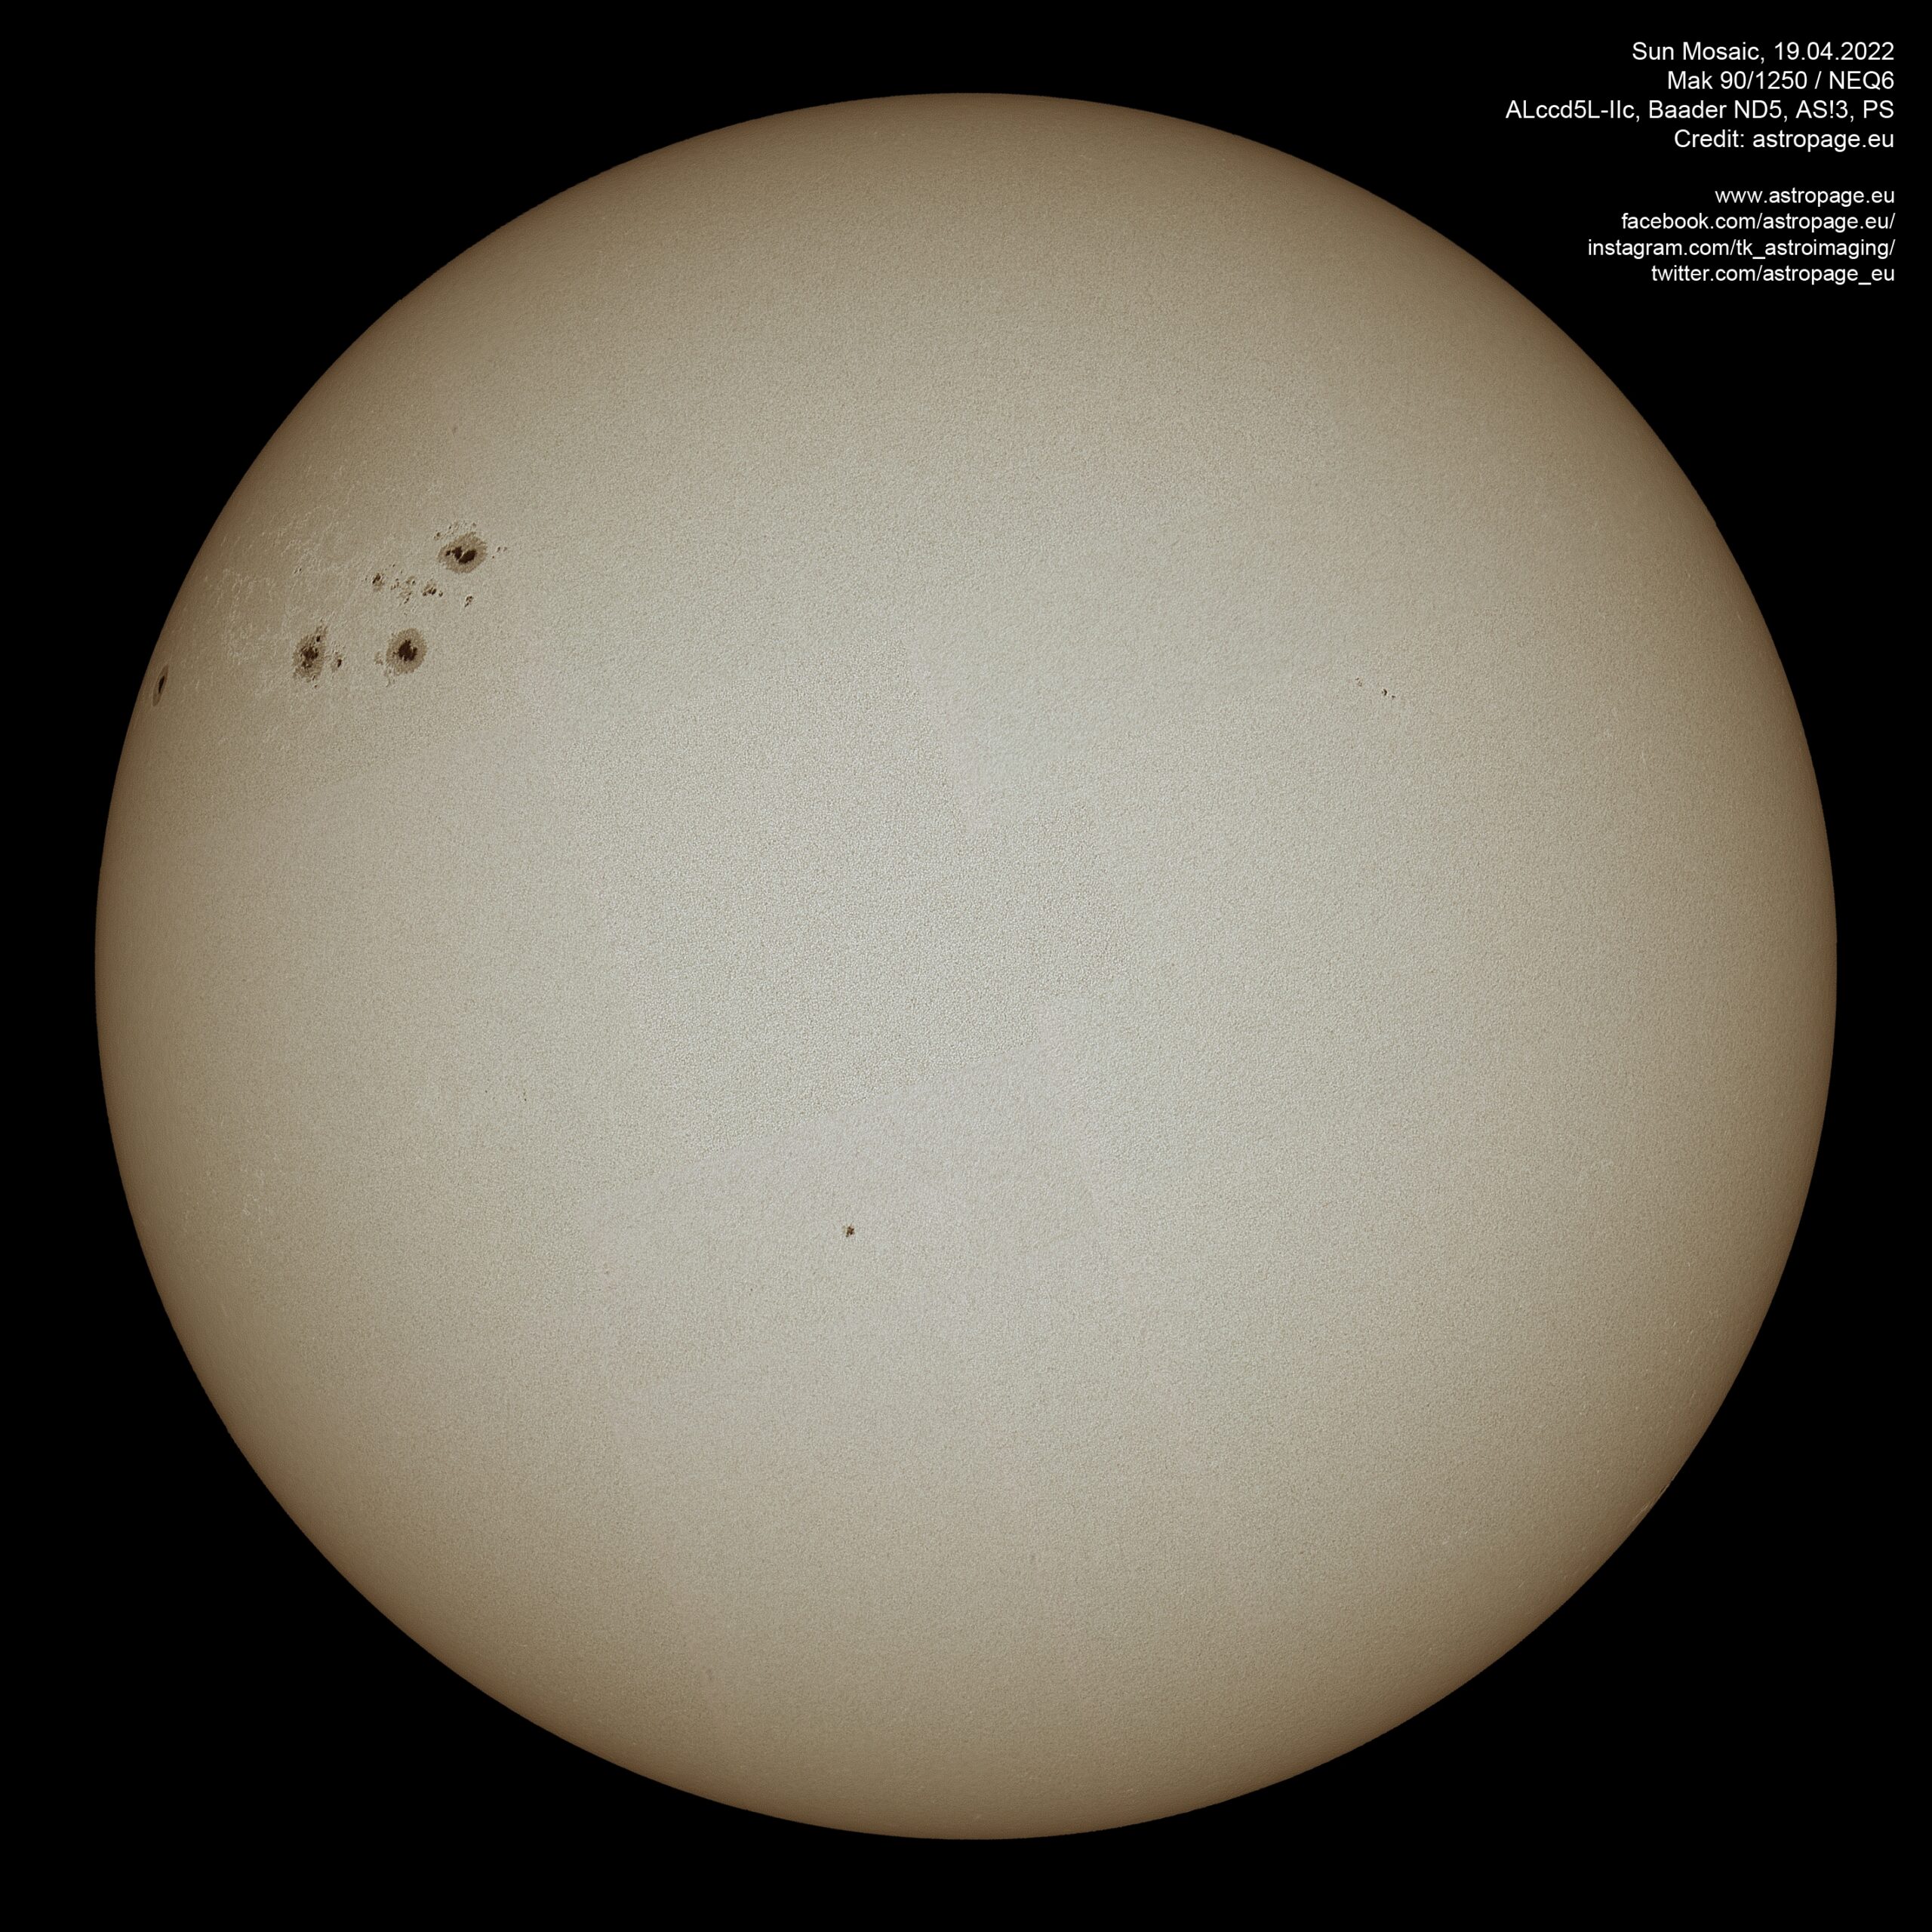 Sonnenmosaik vom 19. April 2022, aufgenommen mit einer Planetencam und einem Mak 90/1250. (Credits: astropage.eu)